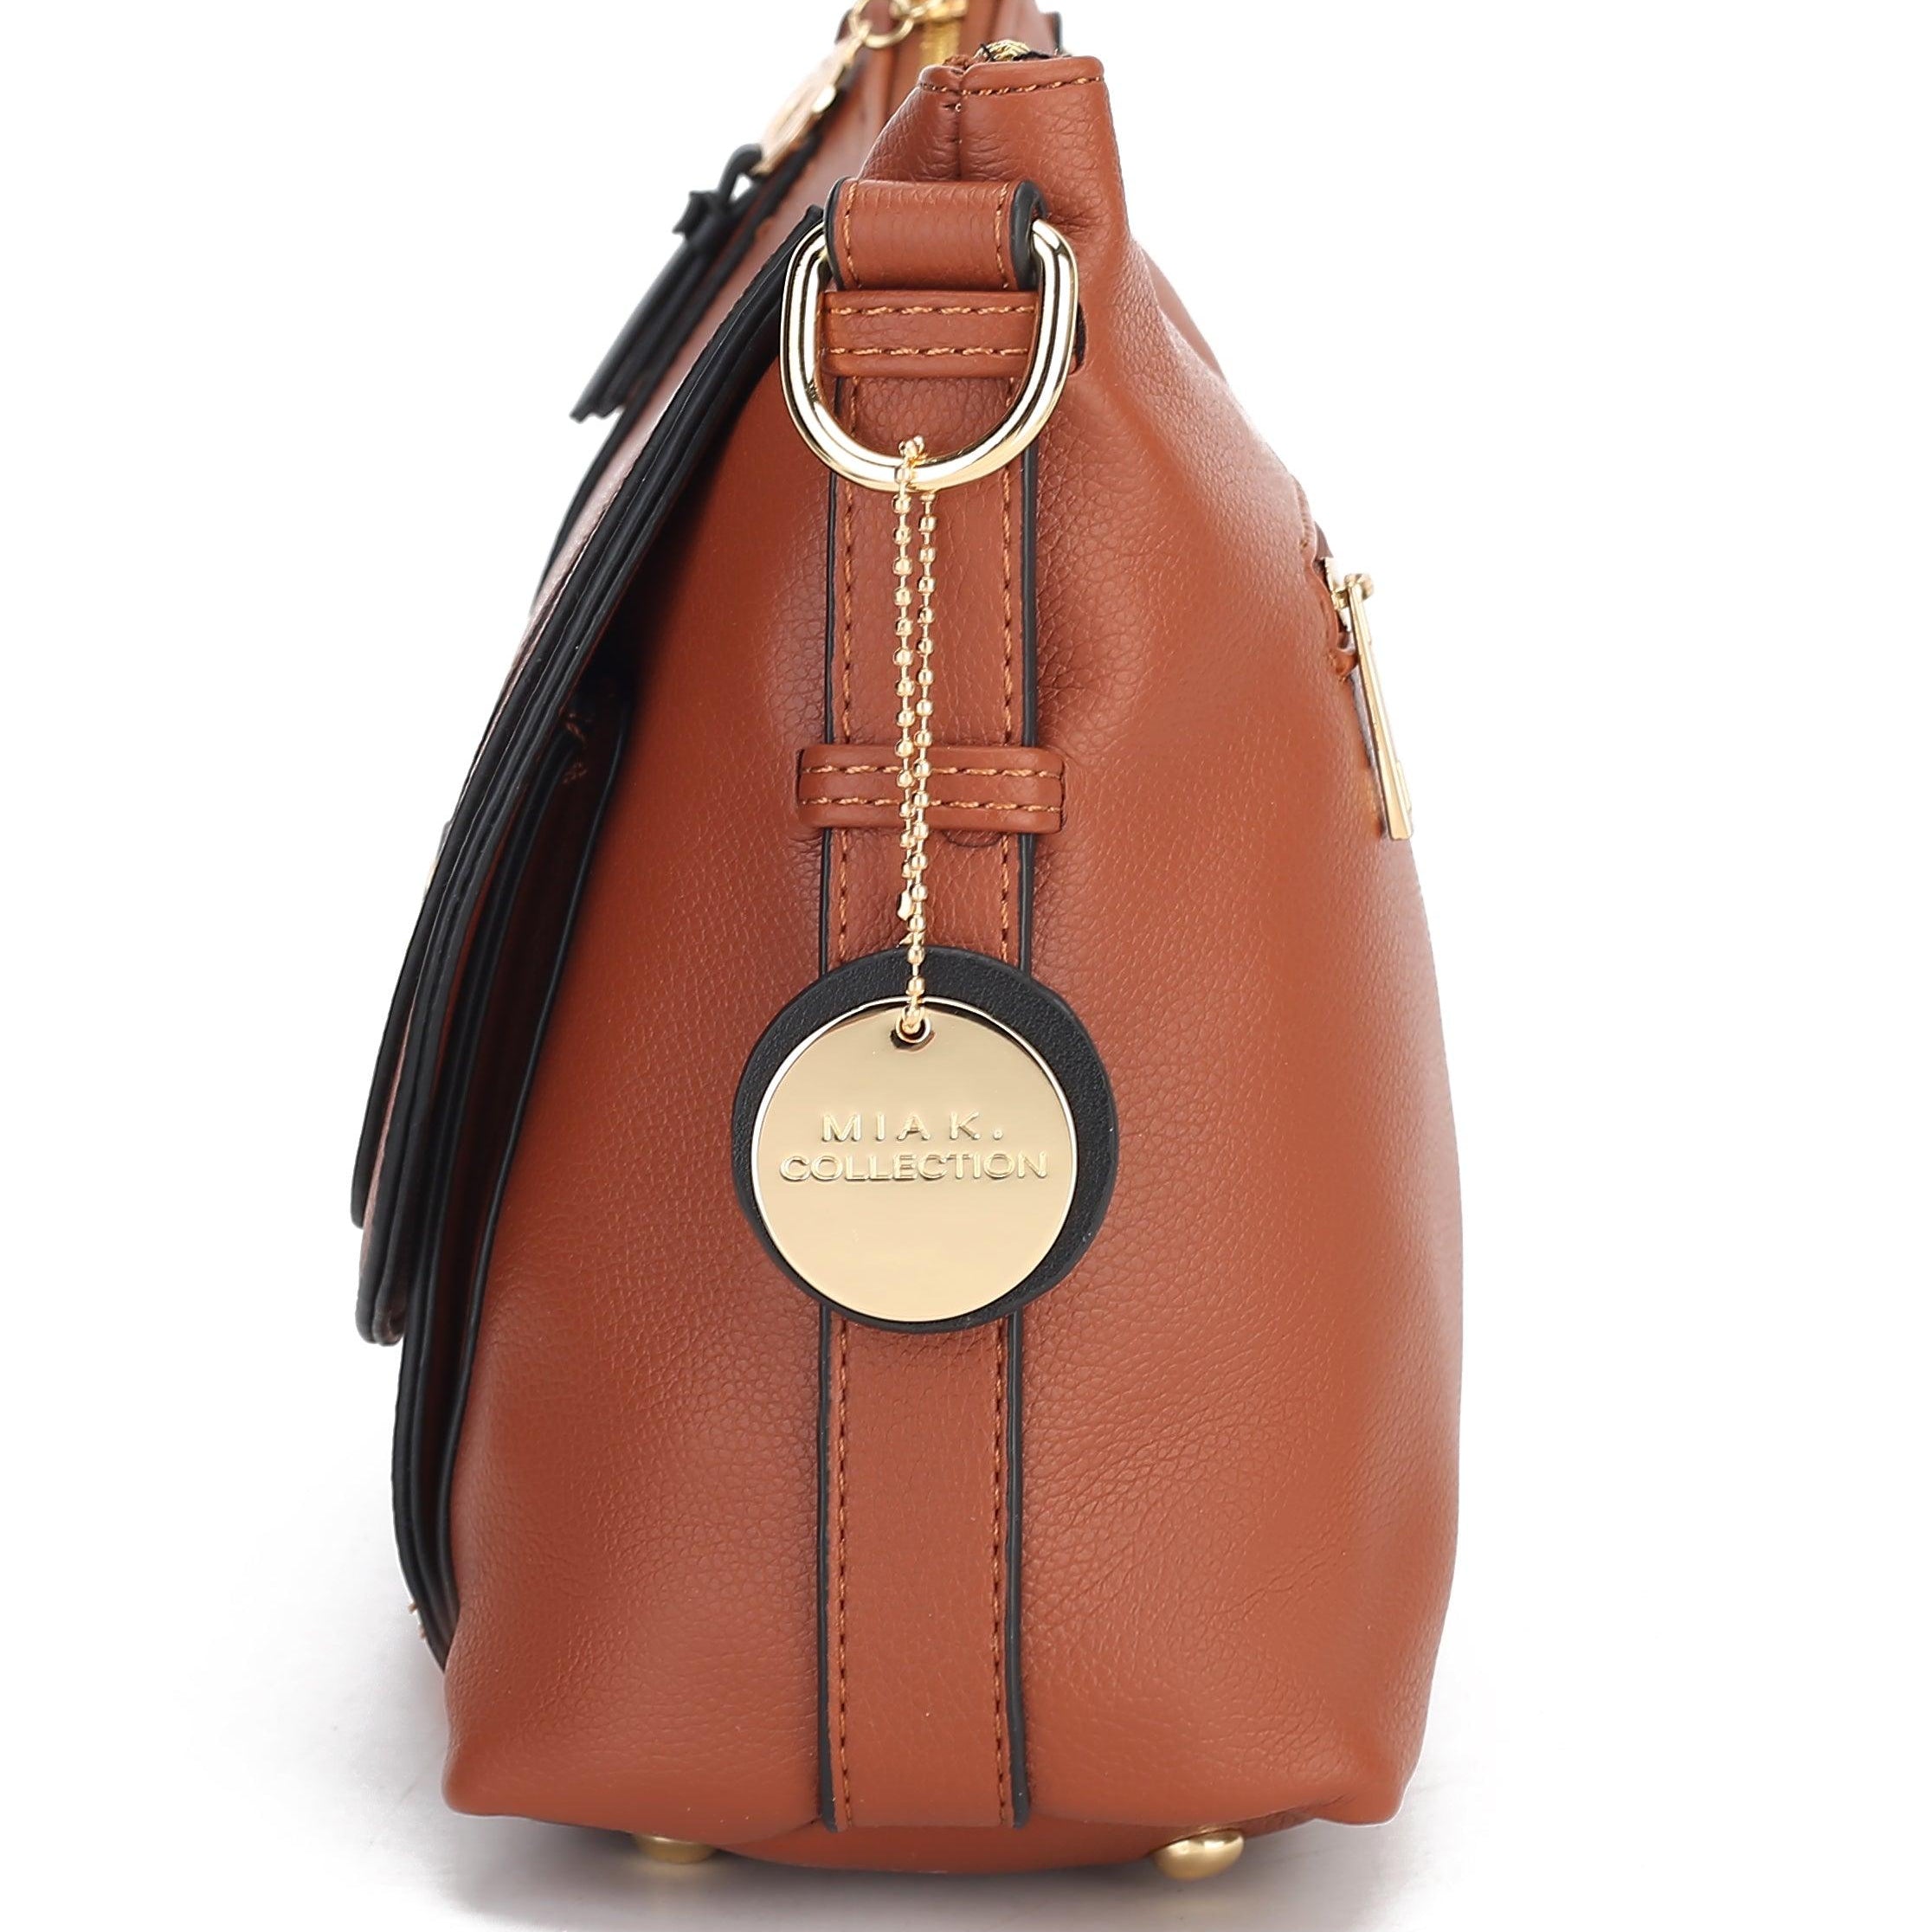 Wallets, Handbags & Accessories Maggie Crossbody bag